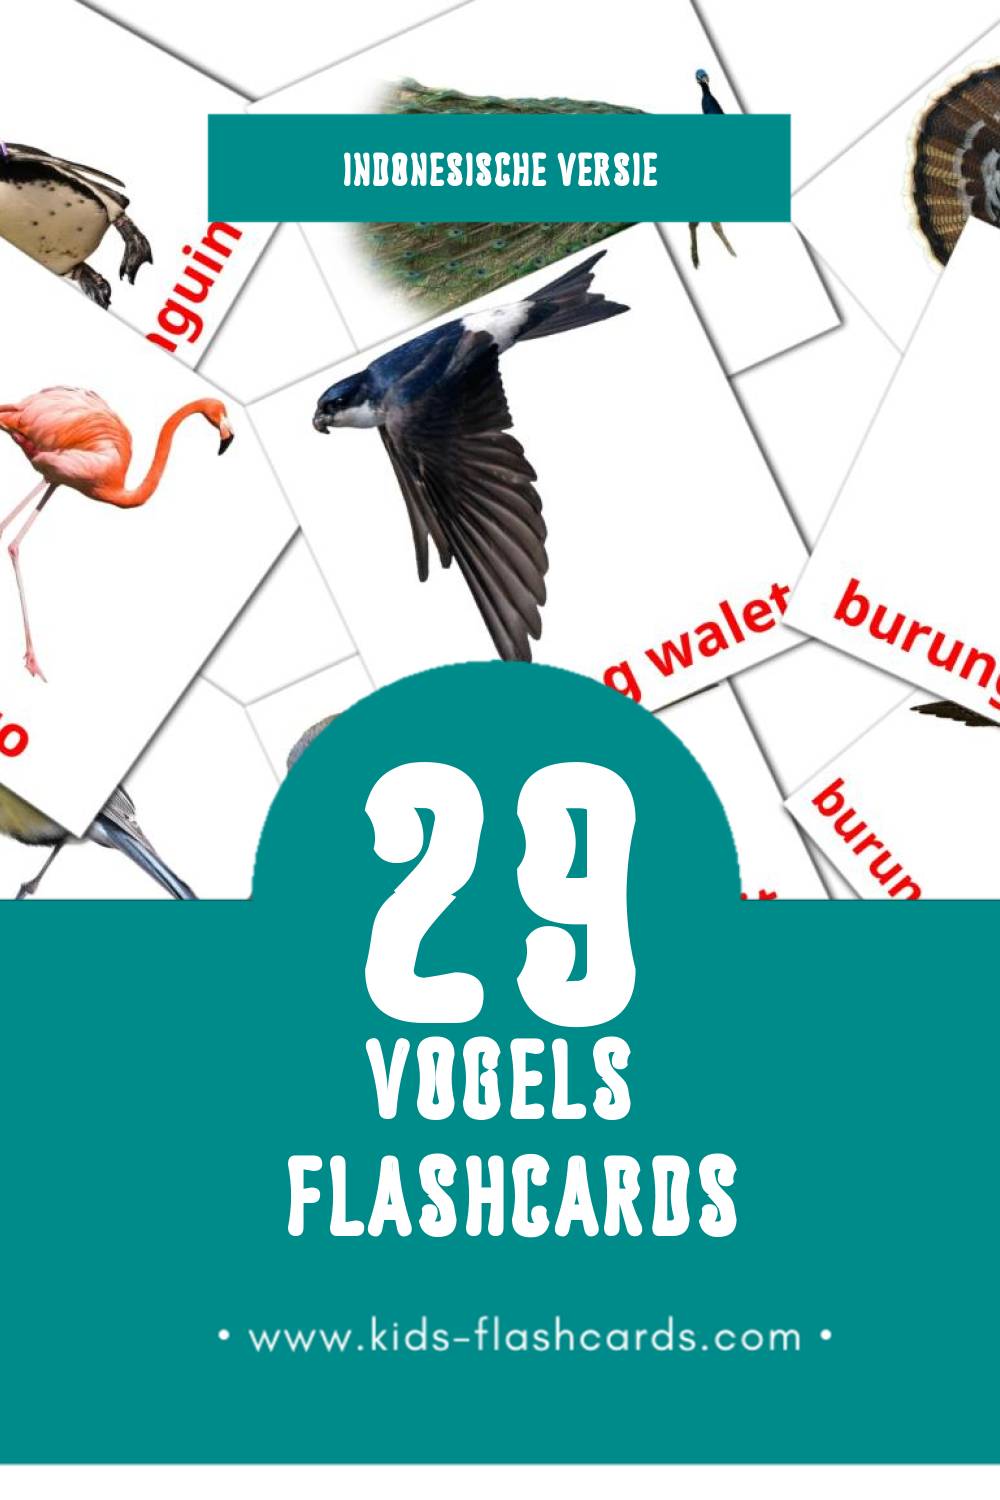 Visuele Burung Flashcards voor Kleuters (29 kaarten in het Indonesisch)